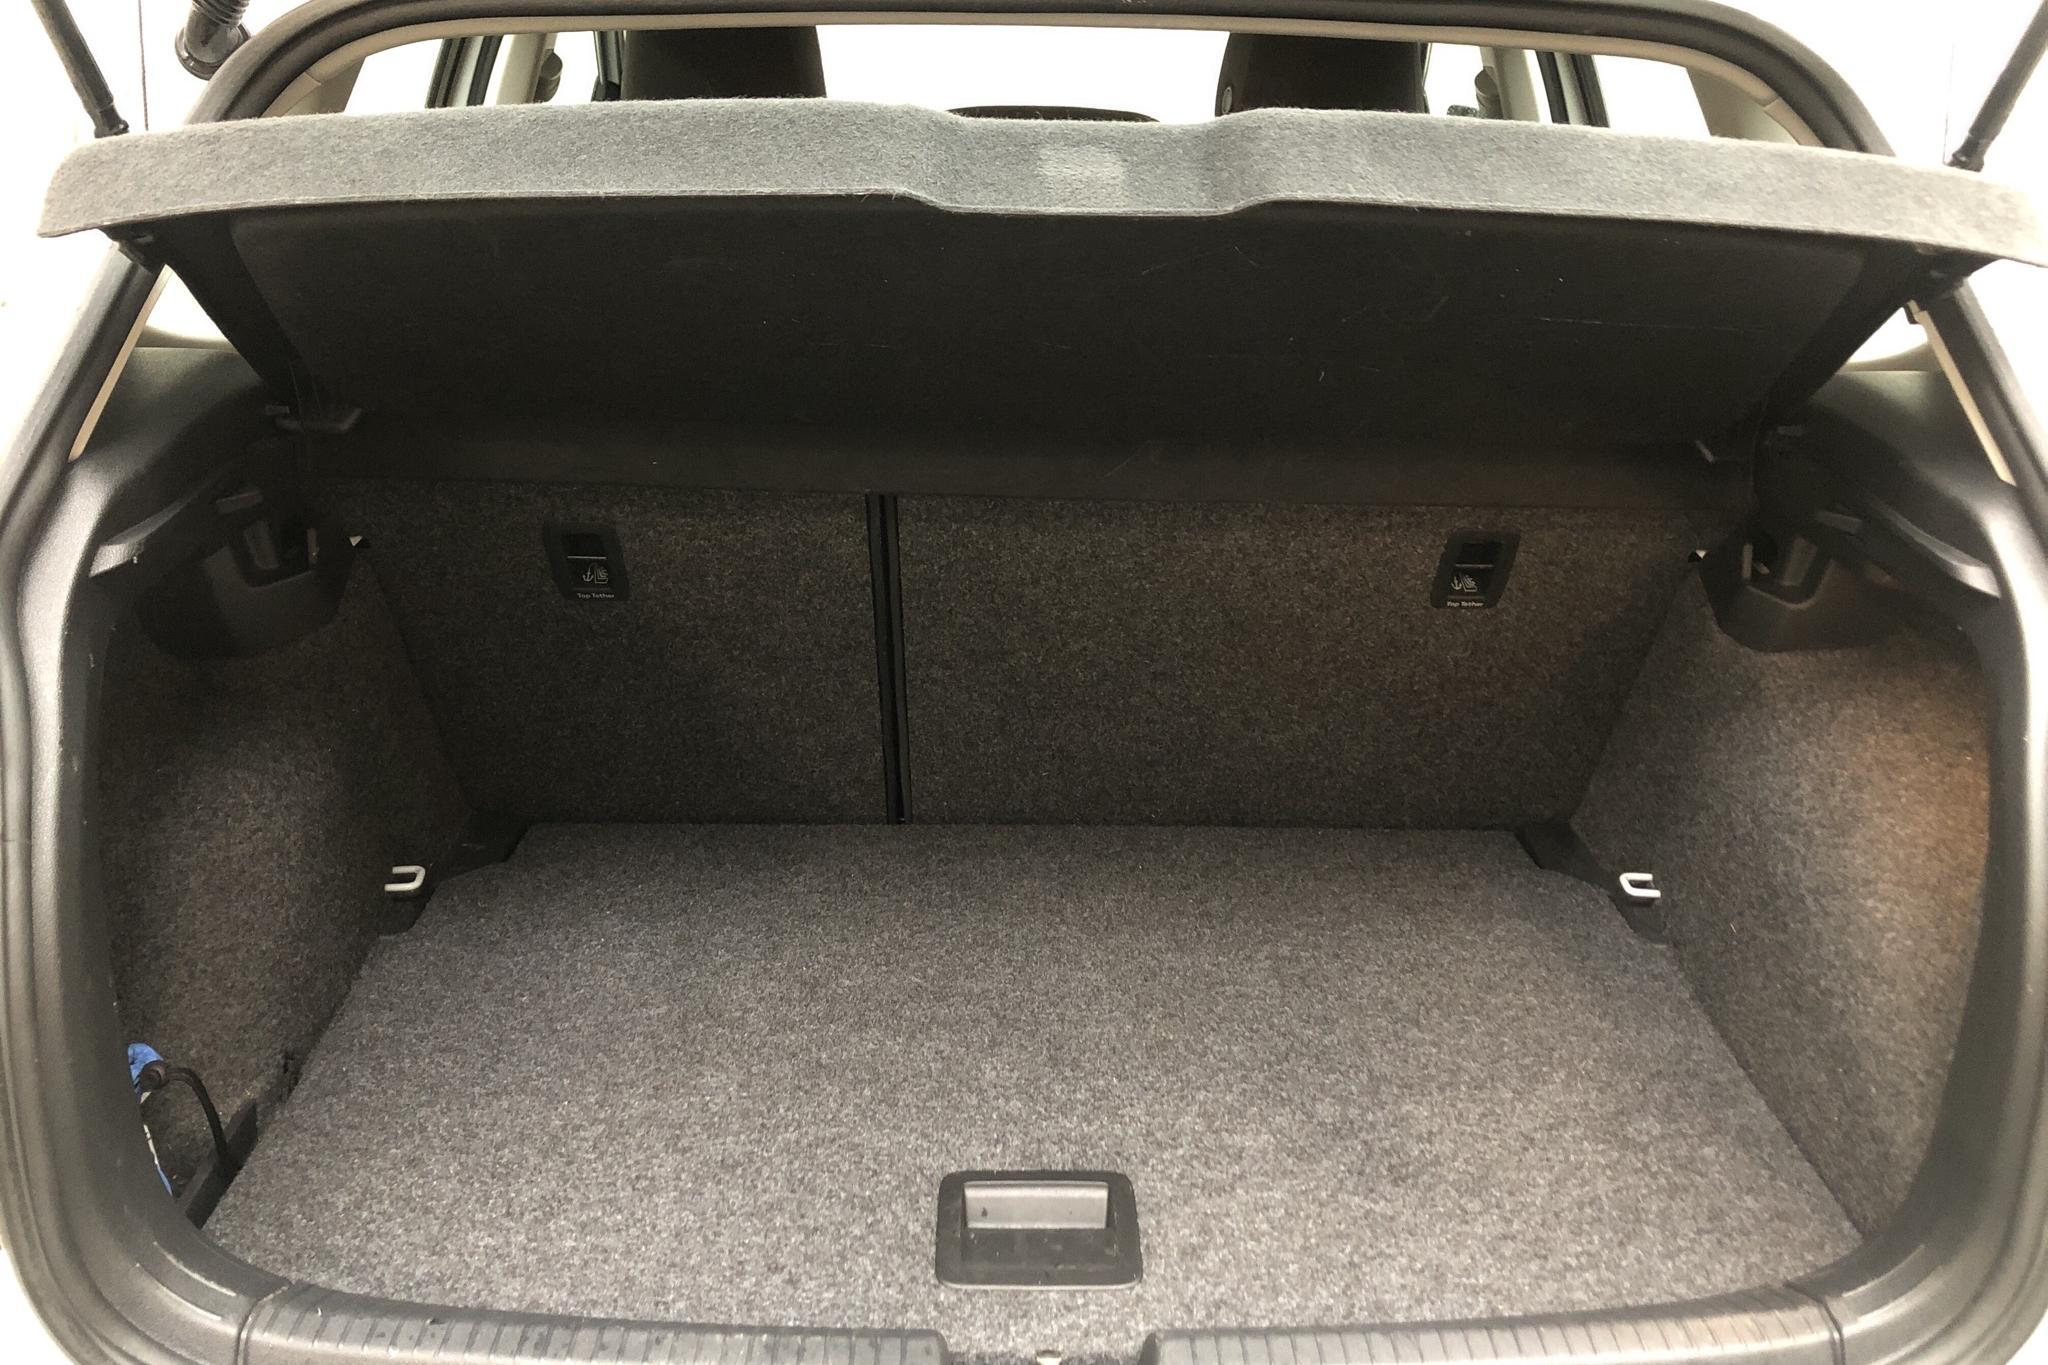 VW Polo 1.0 TGI 5dr (90hk) - 3 411 mil - Manuell - vit - 2018